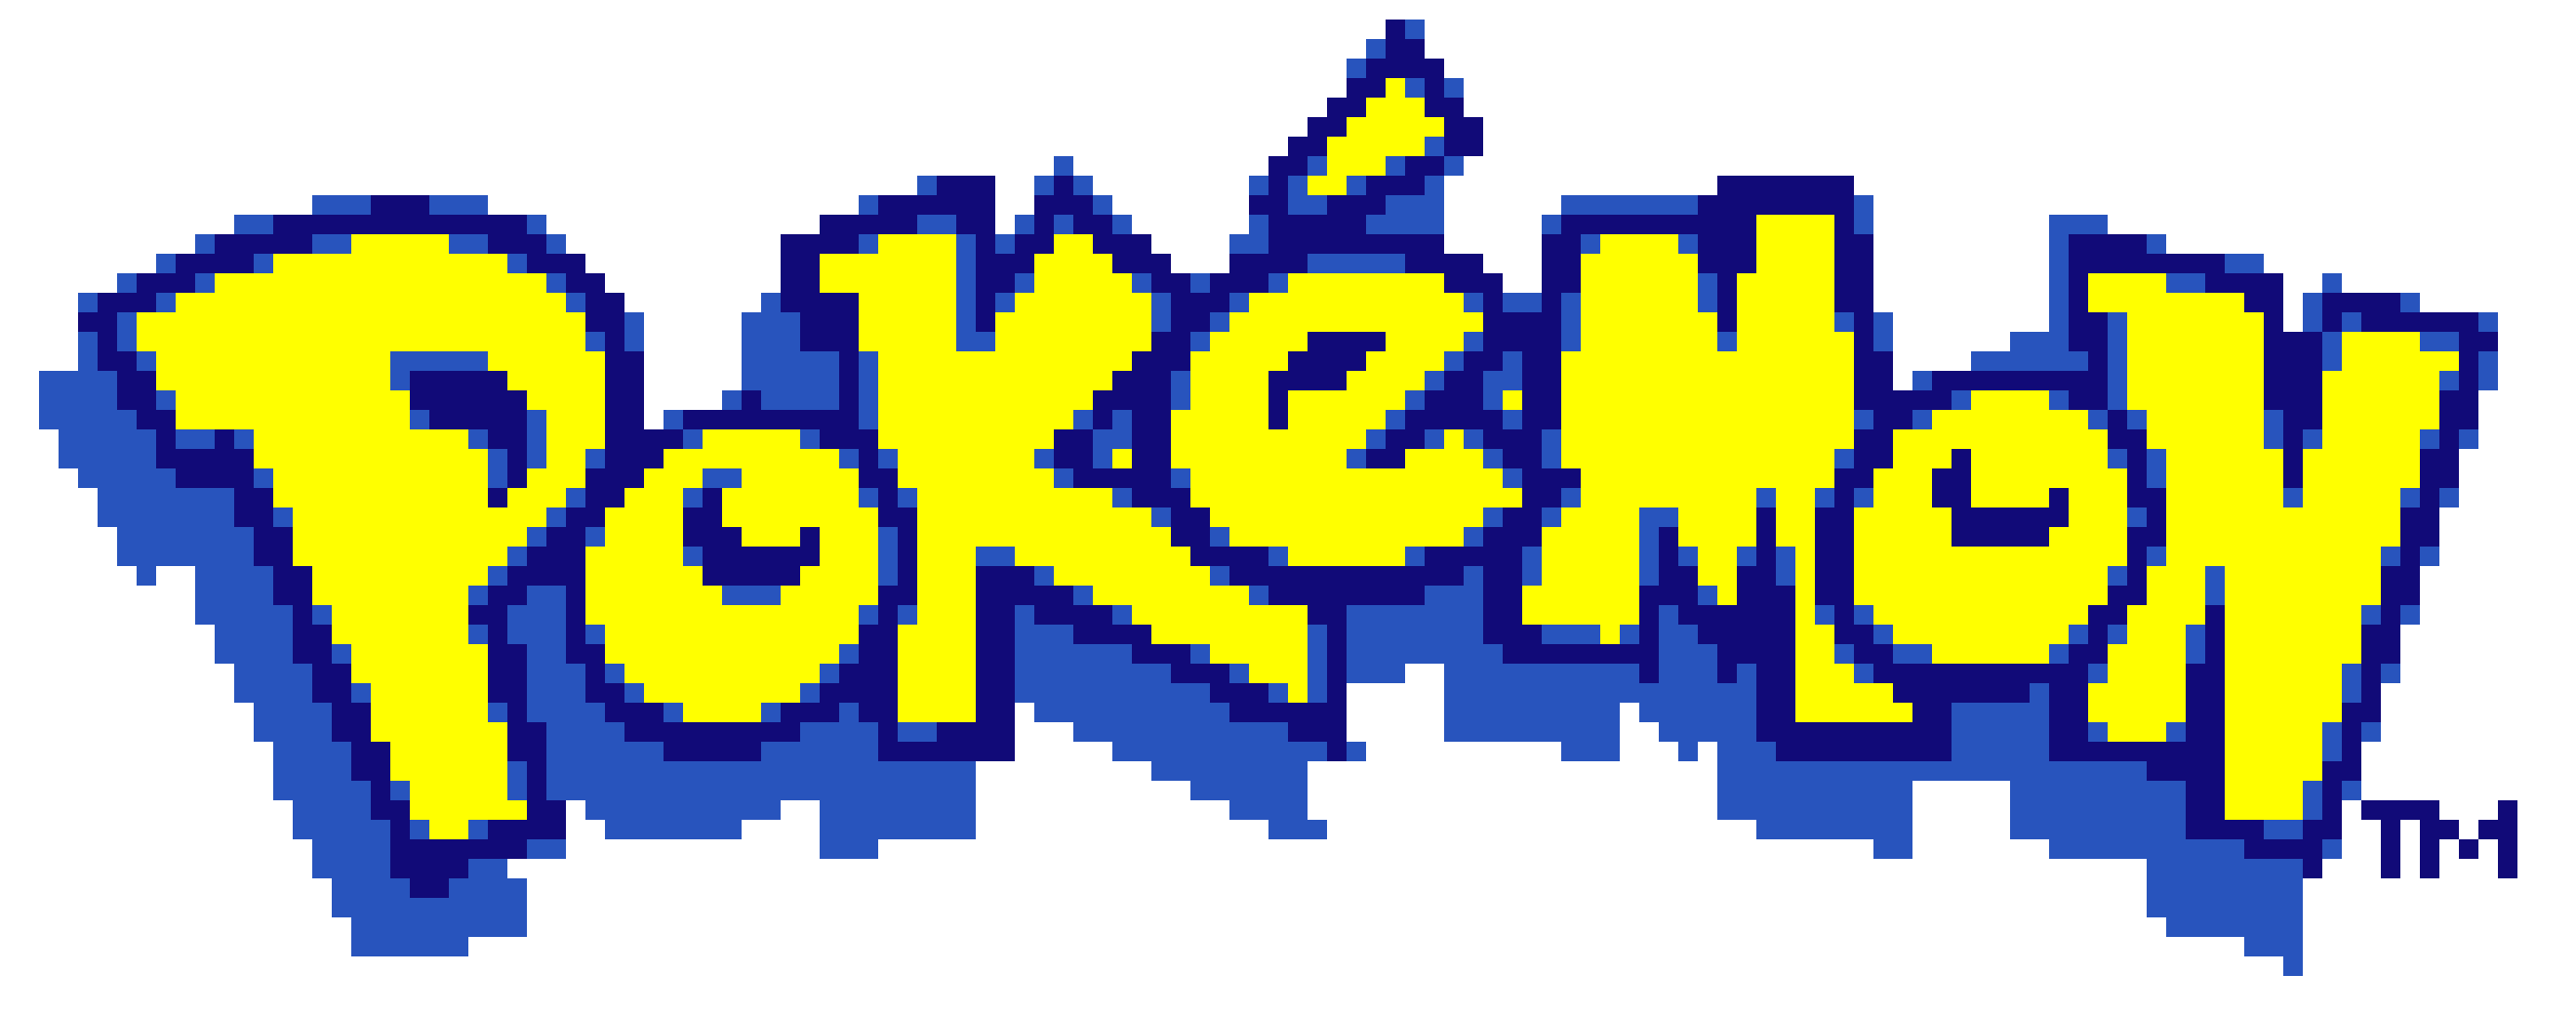 Pokemon Logo Pixel Art Maker